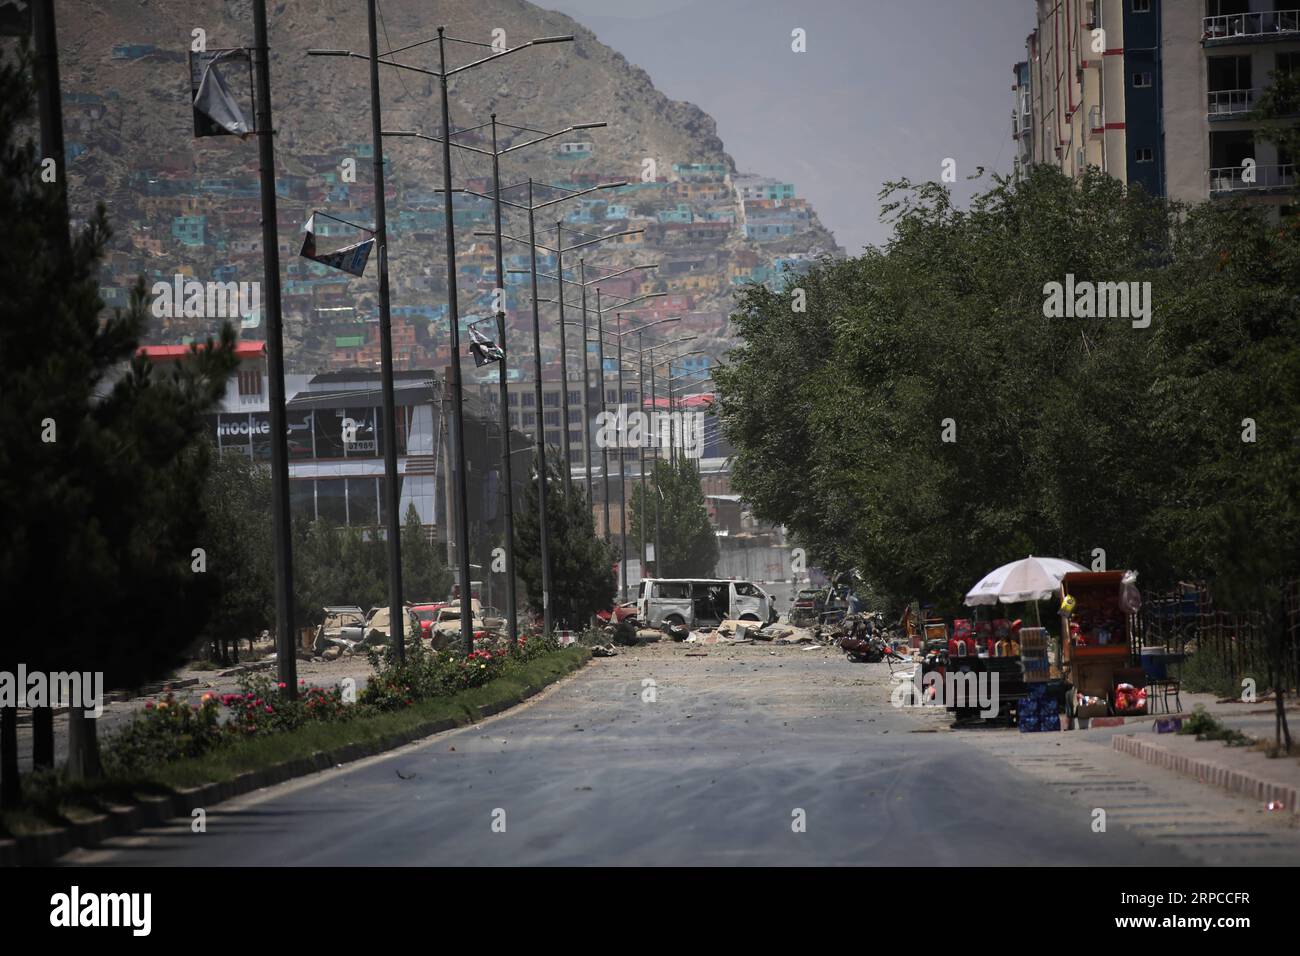 (190701) -- KABUL, 1. Juli 2019 (Xinhua) -- Foto vom 1. Juli 2019 zeigt den Ort eines Sprengangriffs in Kabul, der Hauptstadt Afghanistans. Bis zu 34 Tote wurden bestätigt und 68 Verletzte wurden in Krankenhäuser gebracht, nachdem am Montag in der morgendlichen Rush Hour Kabul durch eine starke Explosion erschüttert worden war, berichtete das Tolo Television. (Xinhua/Rahmat Alizadah) AFGHANISTAN-KABUL-BLAST PUBLICATIONxNOTxINxCHN Stockfoto